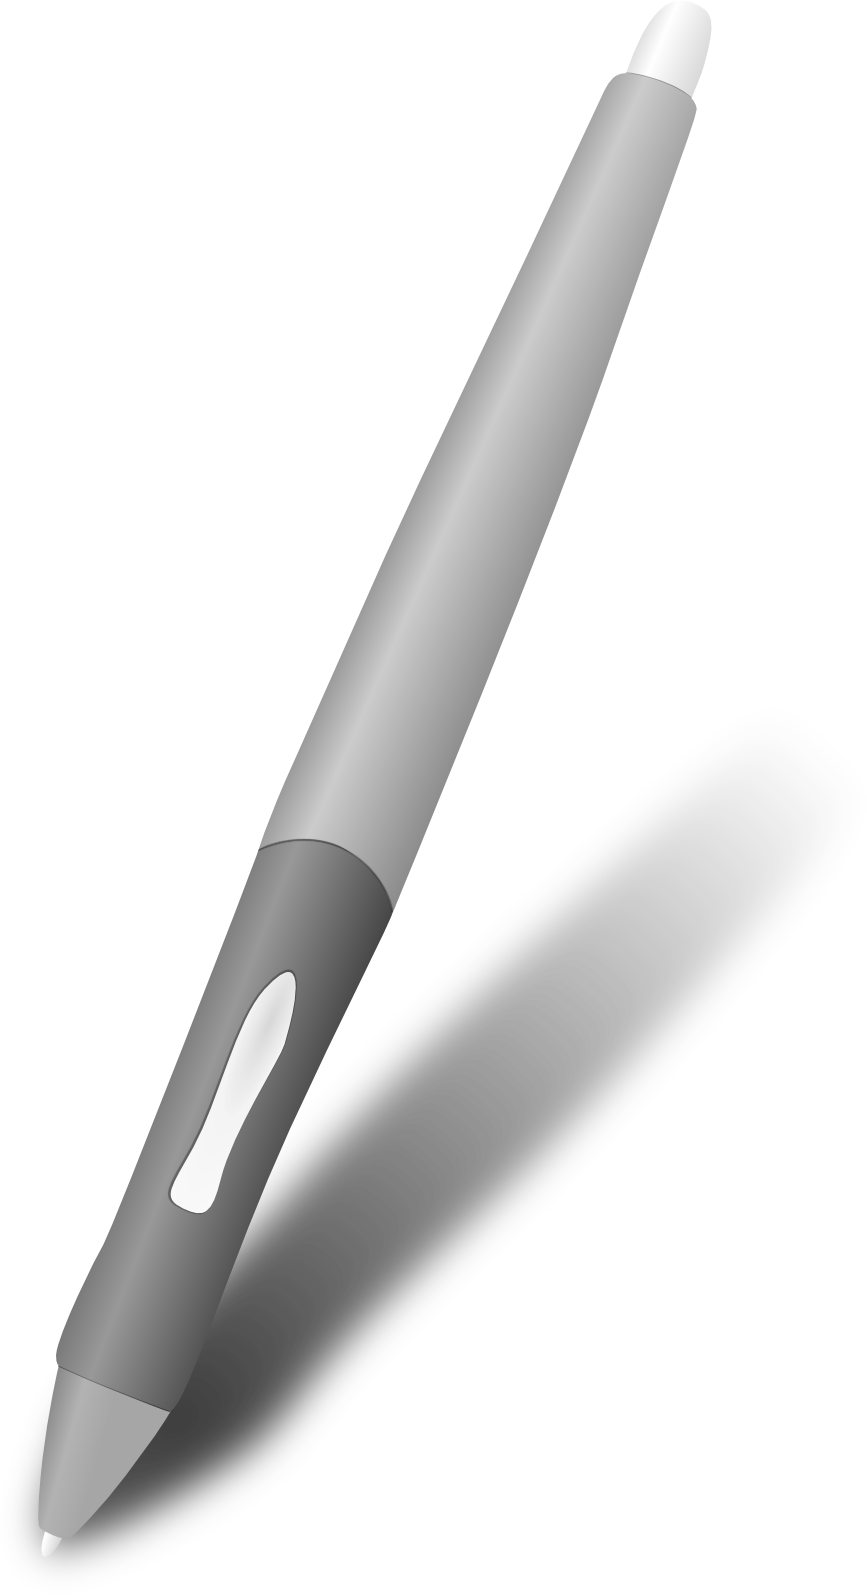 Wacom Pen Png - A Wacom Pen By Usedhonda A Wacom Pen By Usedhonda, Transparent background PNG HD thumbnail